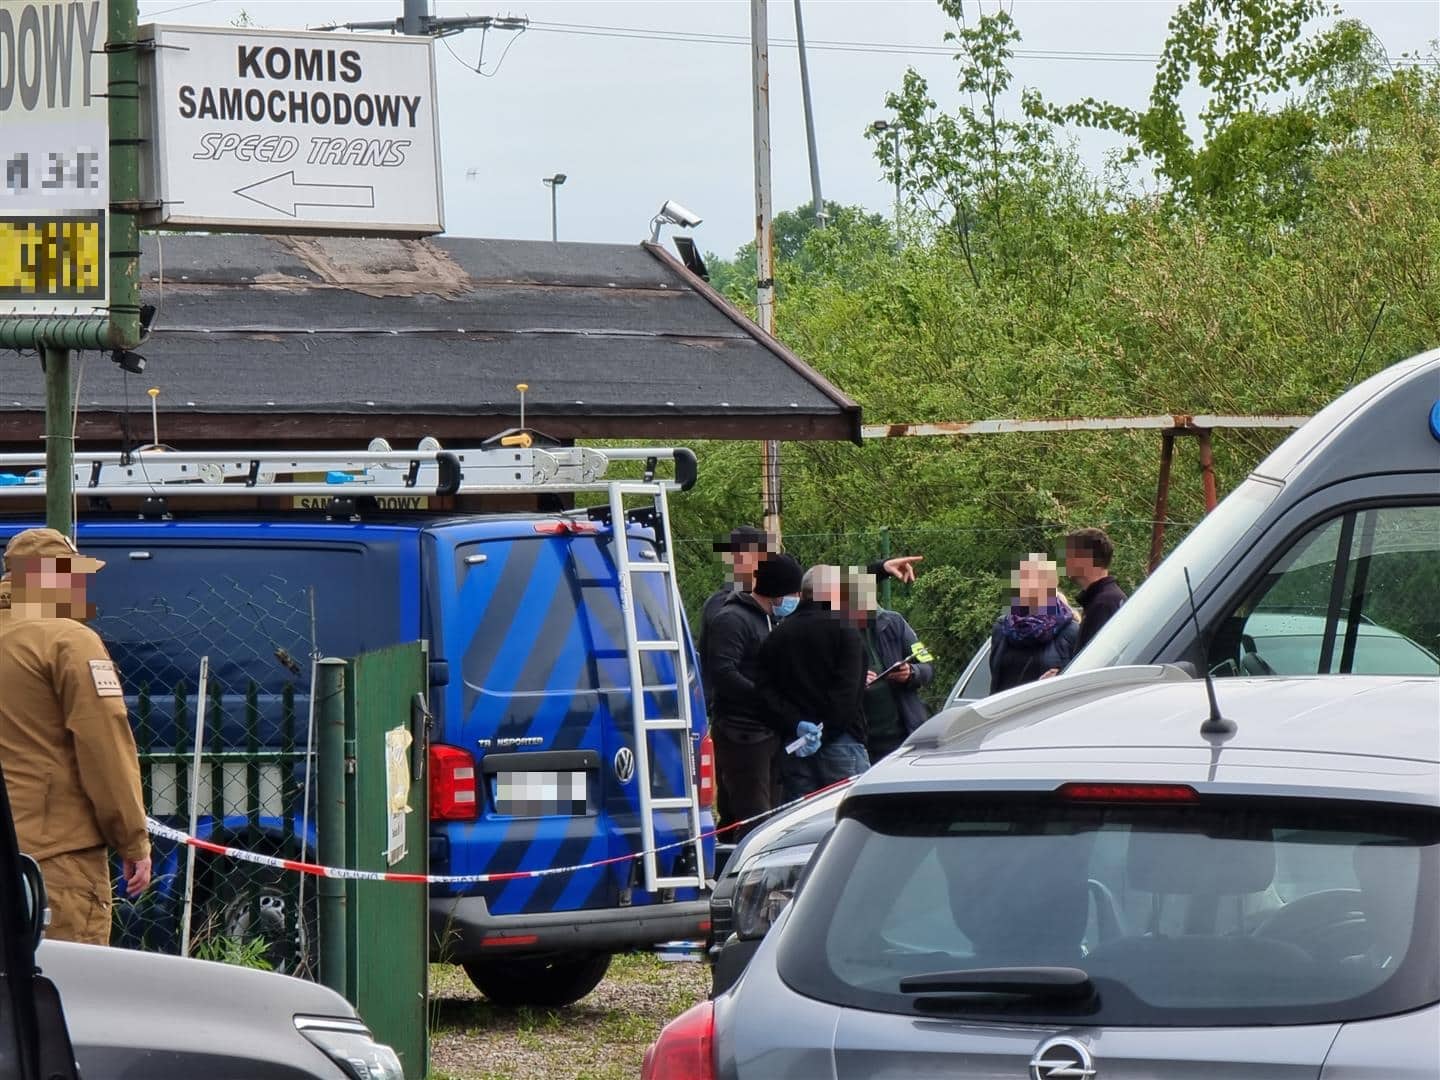 Wiadomo kto zginął w autokomisie. "Kajtek" i "Paragon" siedzieli martwi w fotelach zabójstwo Olsztyn, Wiadomości